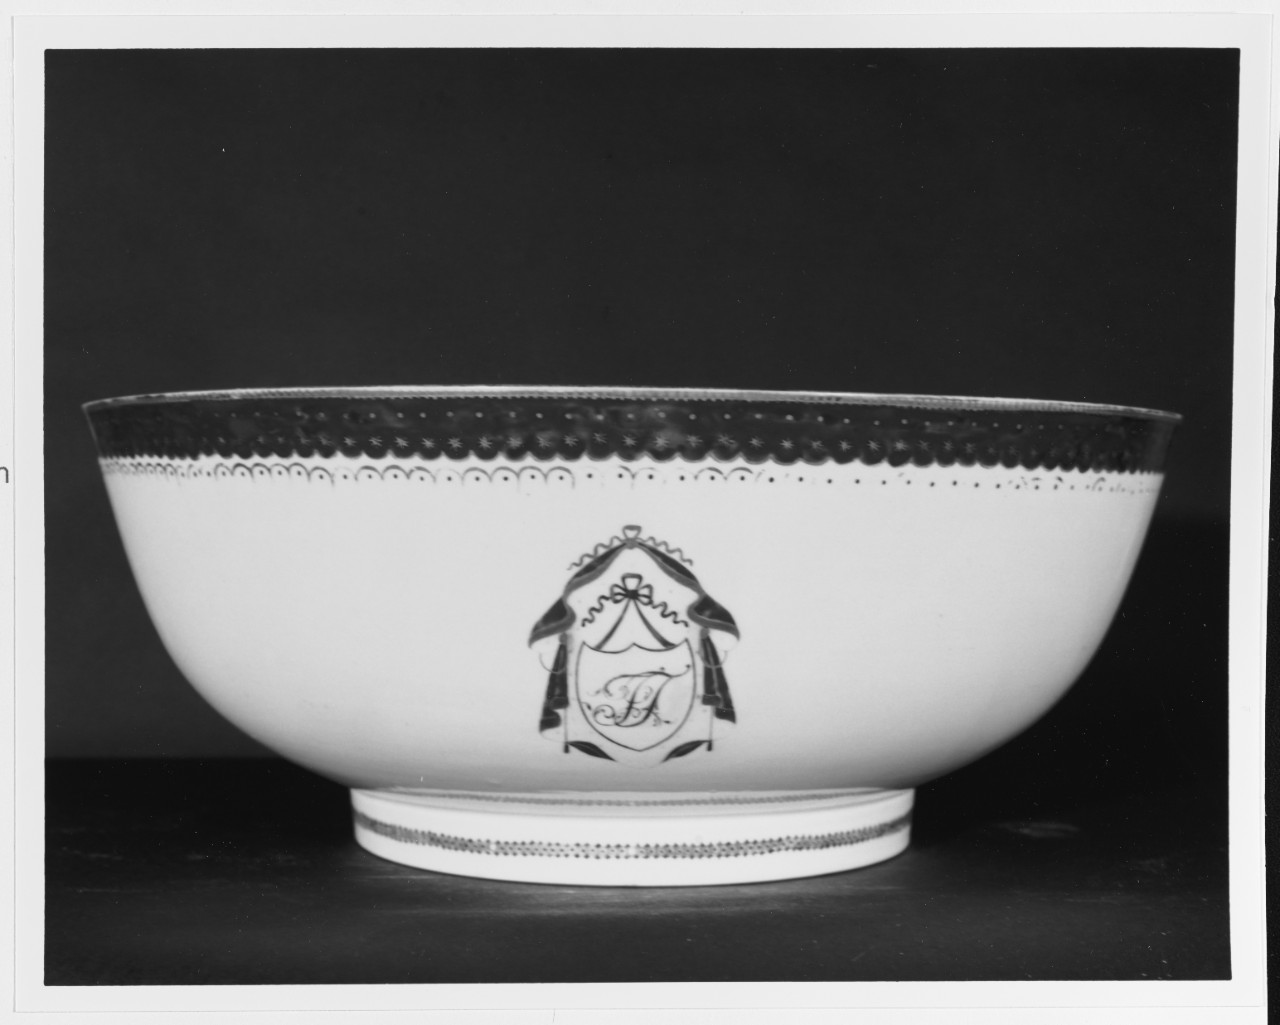 Truxton bowl